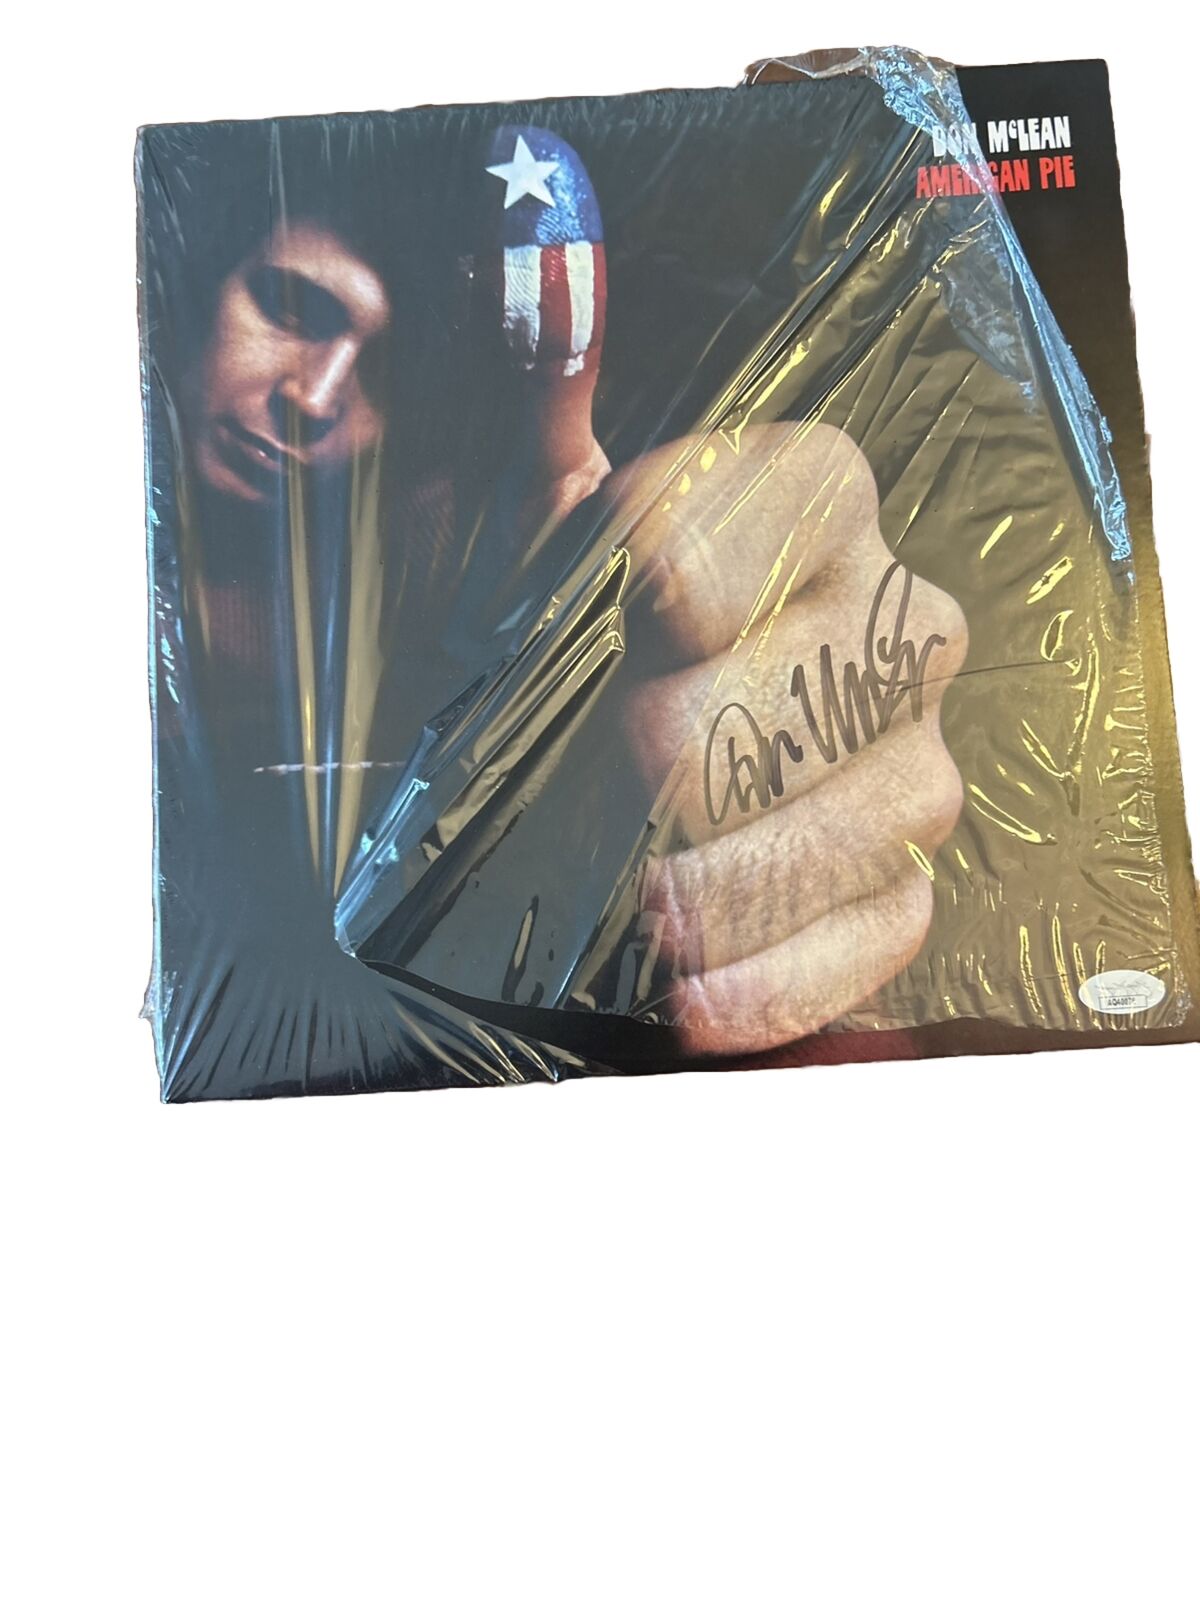 Don McLean Signed Autographed Album LP AMERICAN PIE - vinyl proof JSA COA